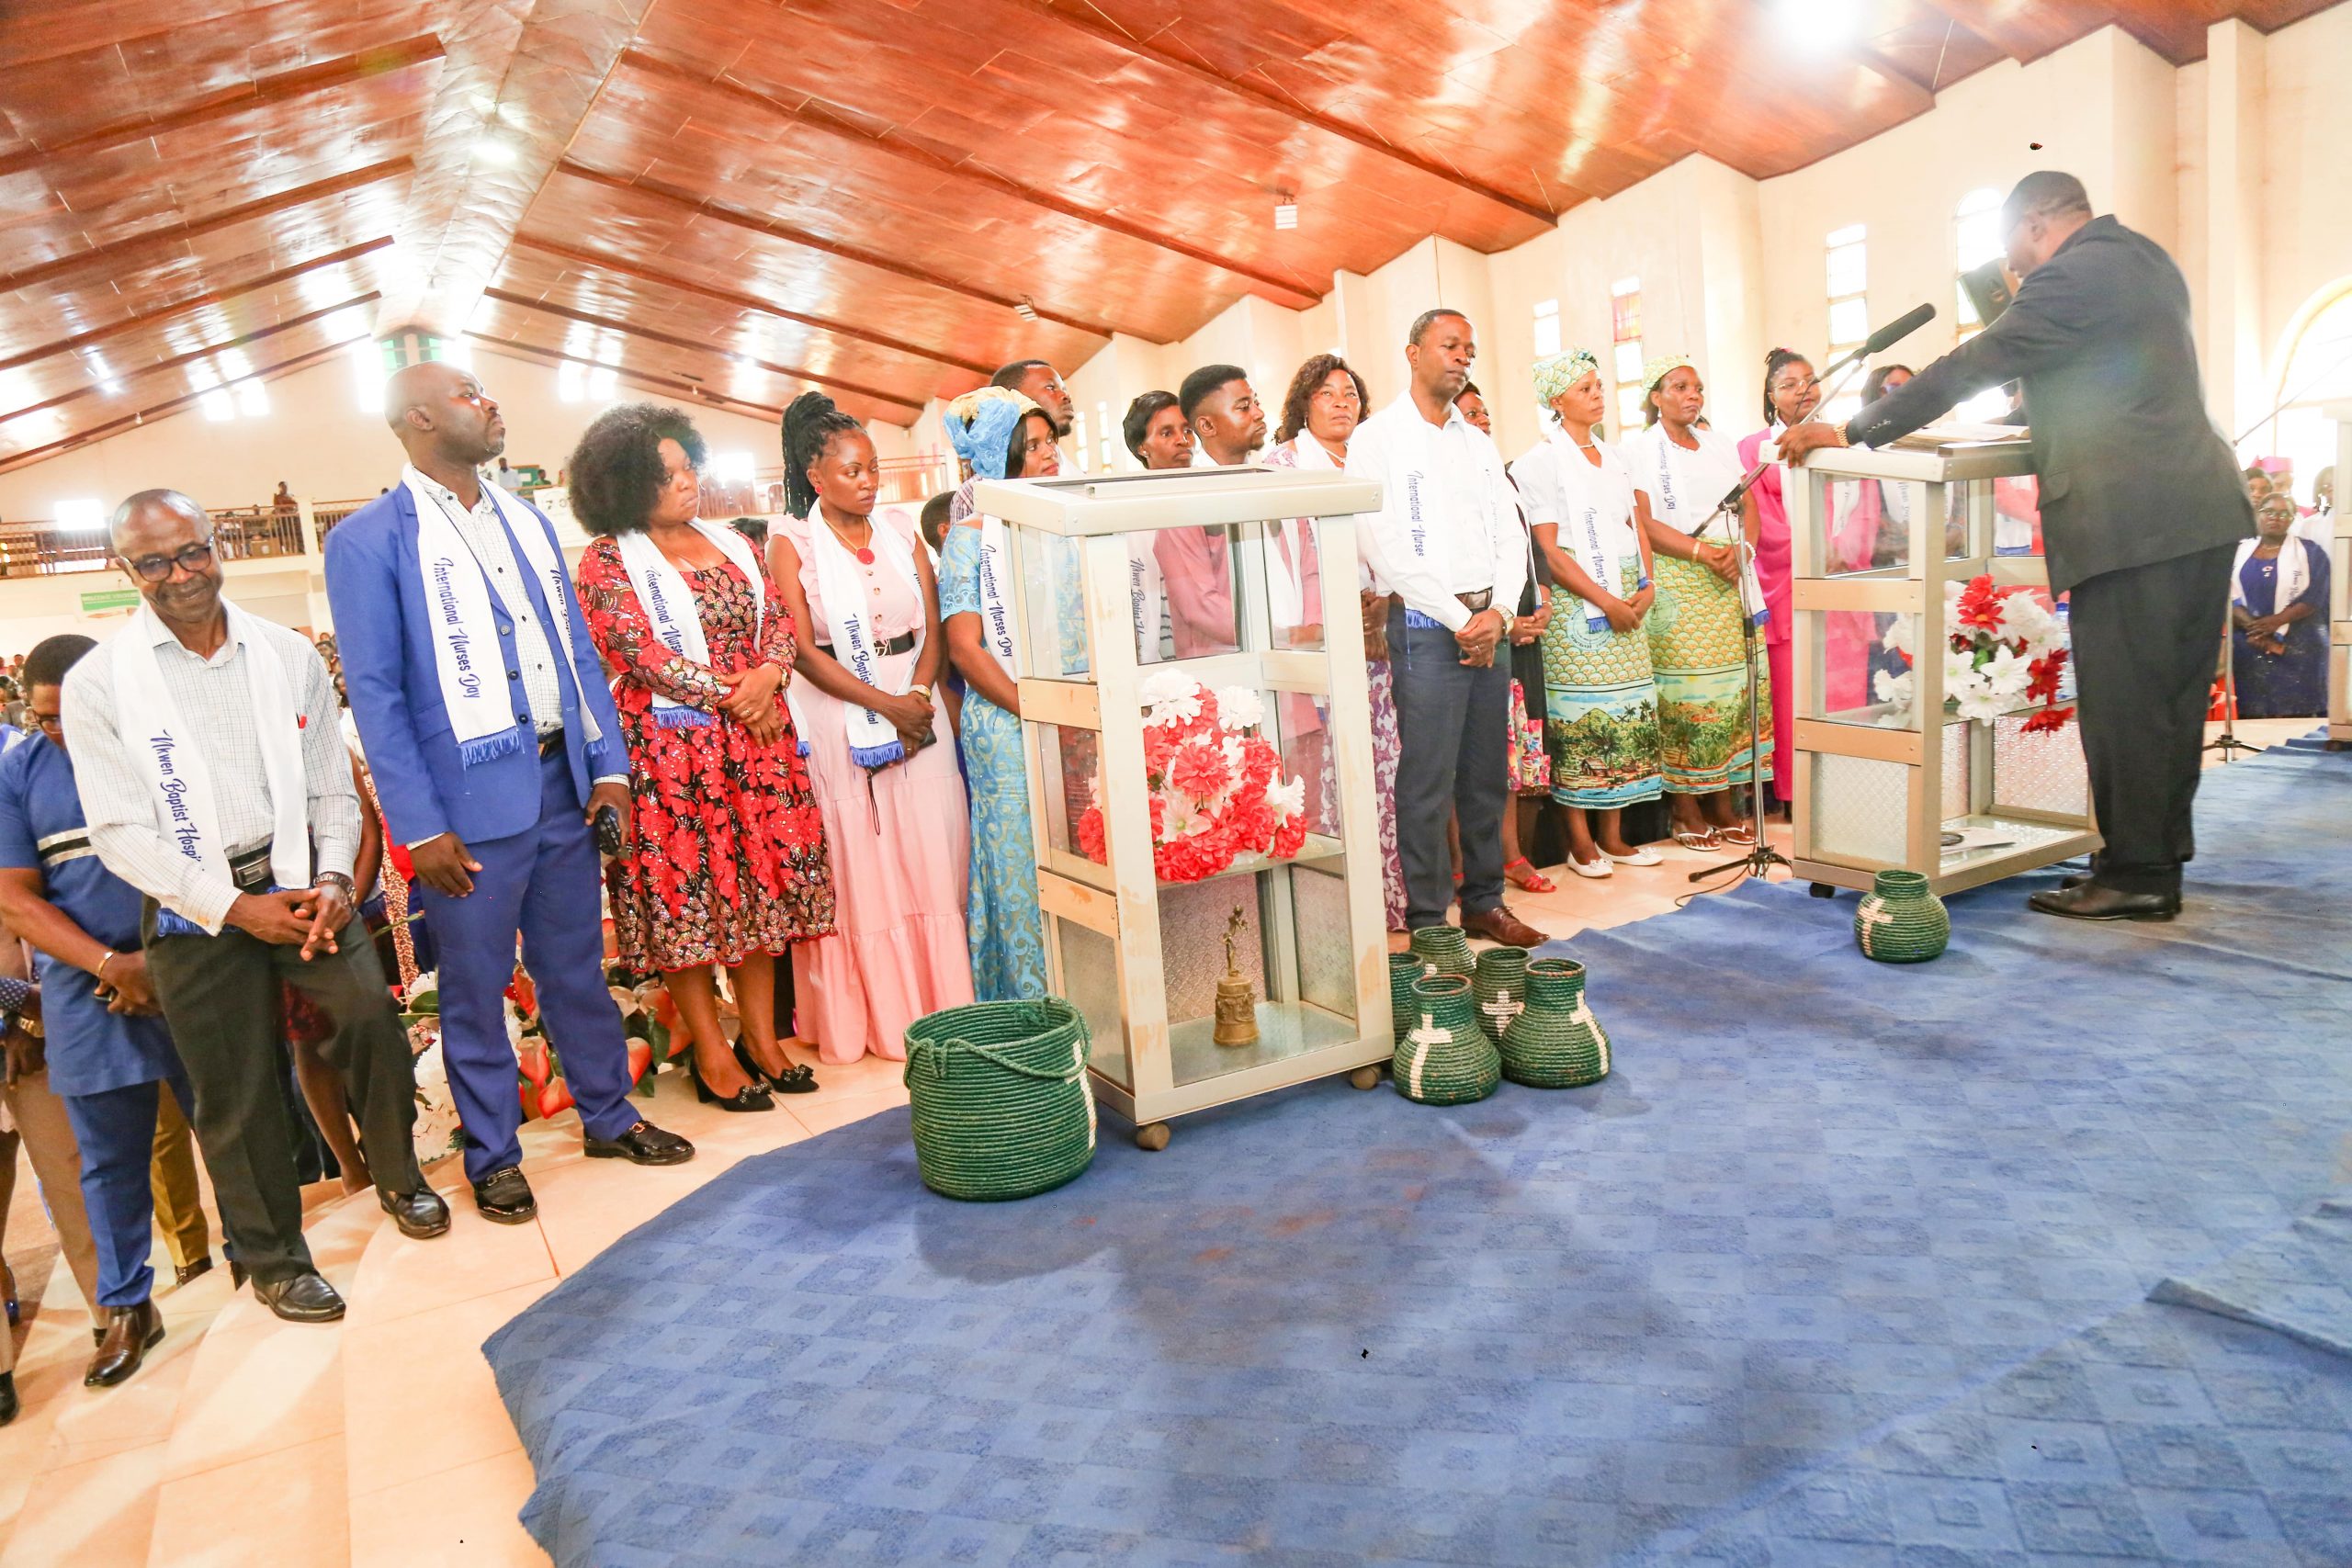 Rev. Njini prays, dedicates nurses and their uniforms to God